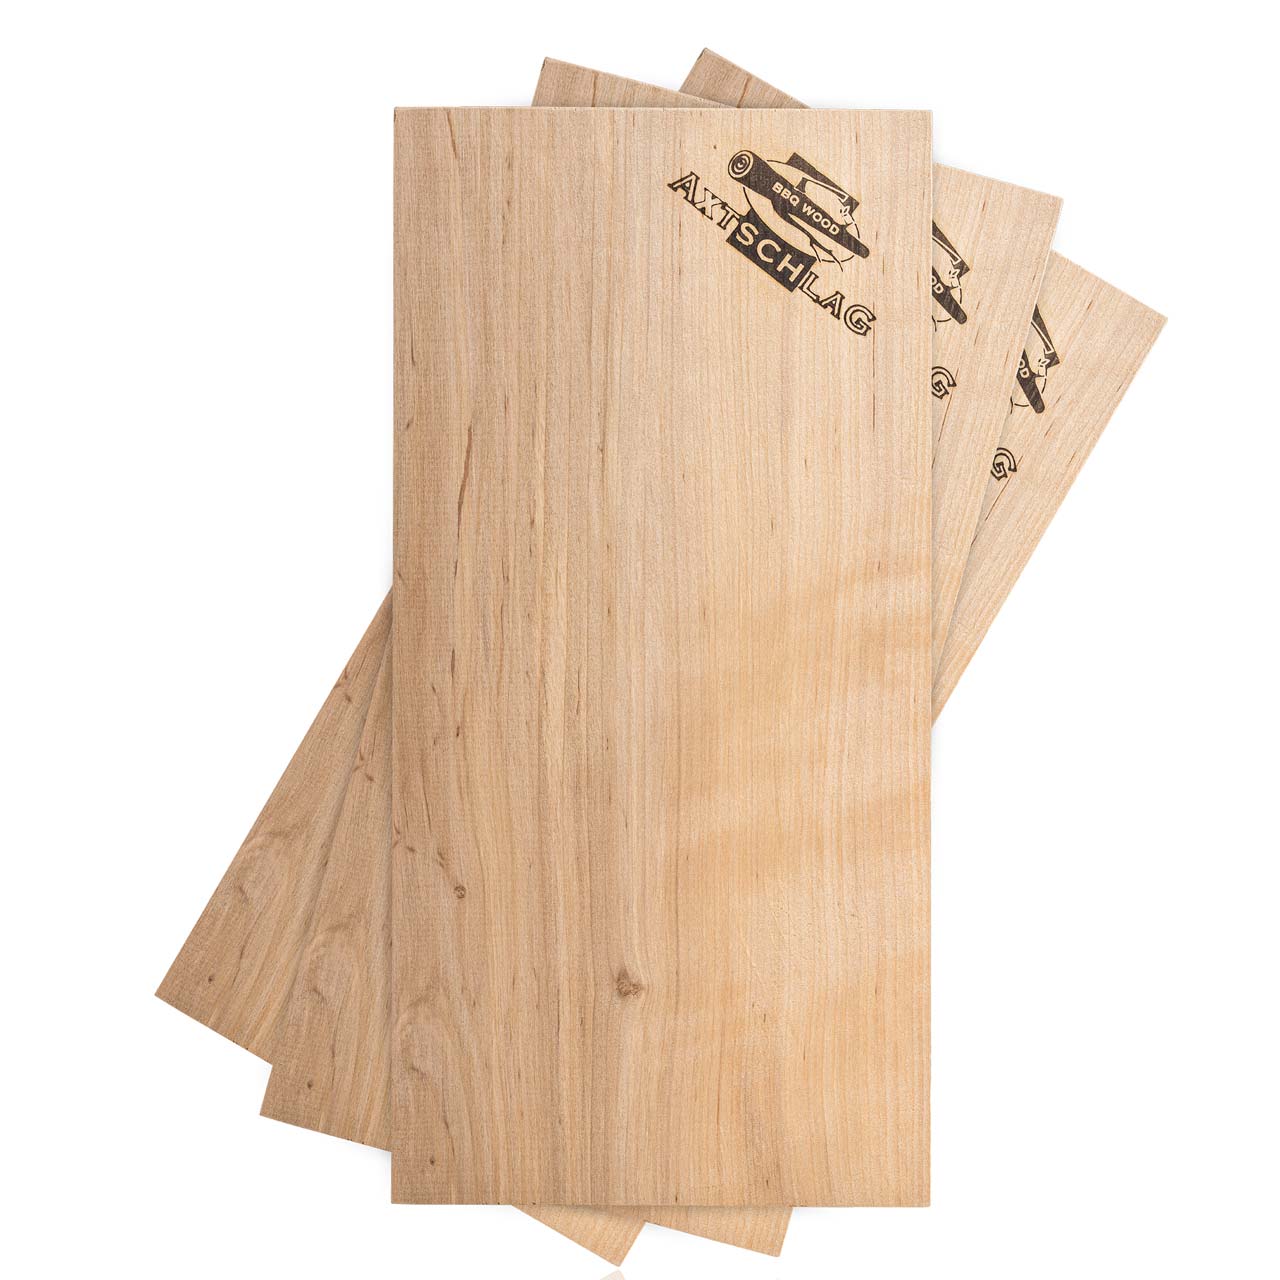 Axtschlag Wood Planks Alder - Erle Grillplanken